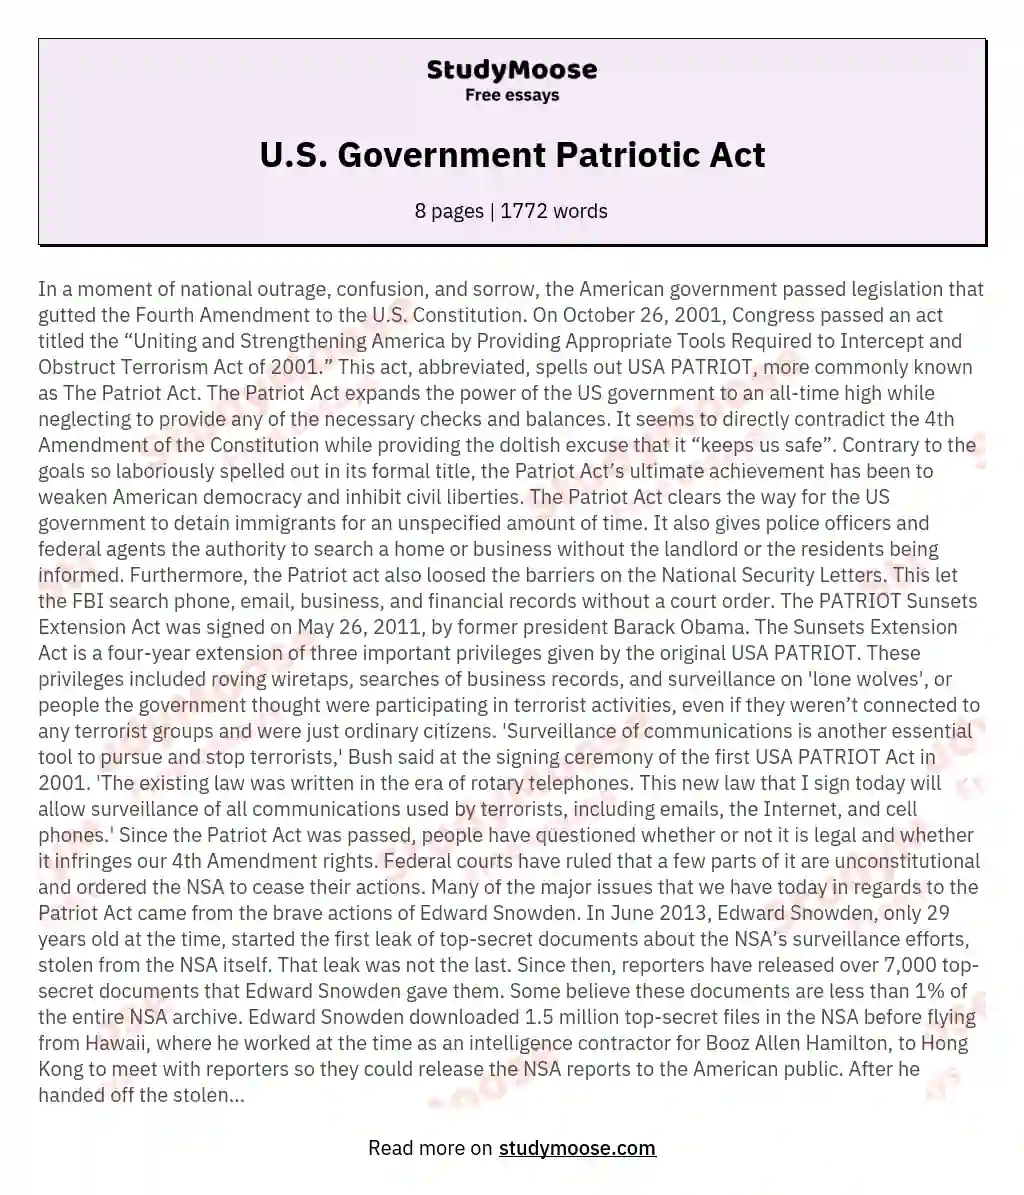 U.S. Government Patriotic Act essay